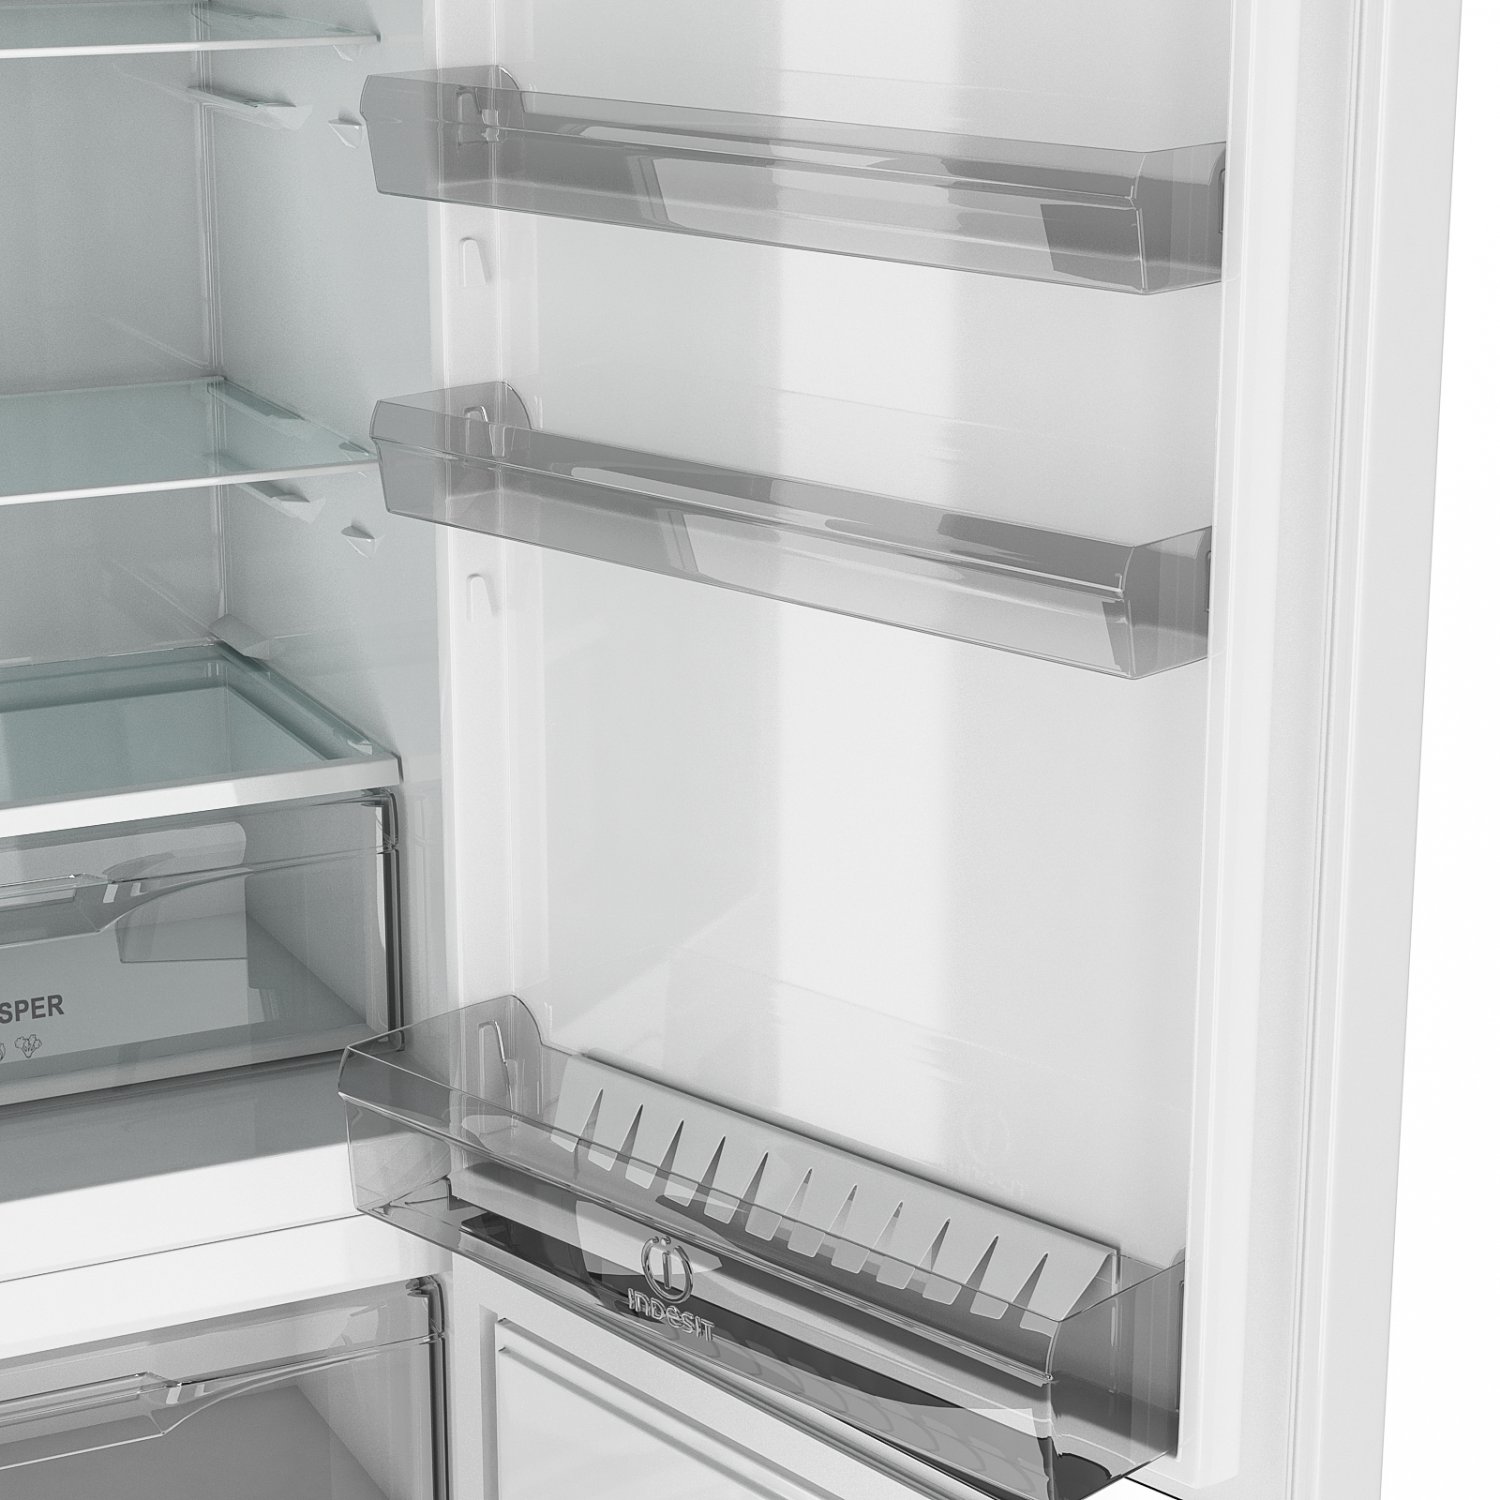 Индезит 5200 w. Индезит df5200w. Холодильник Индезит 5200w.